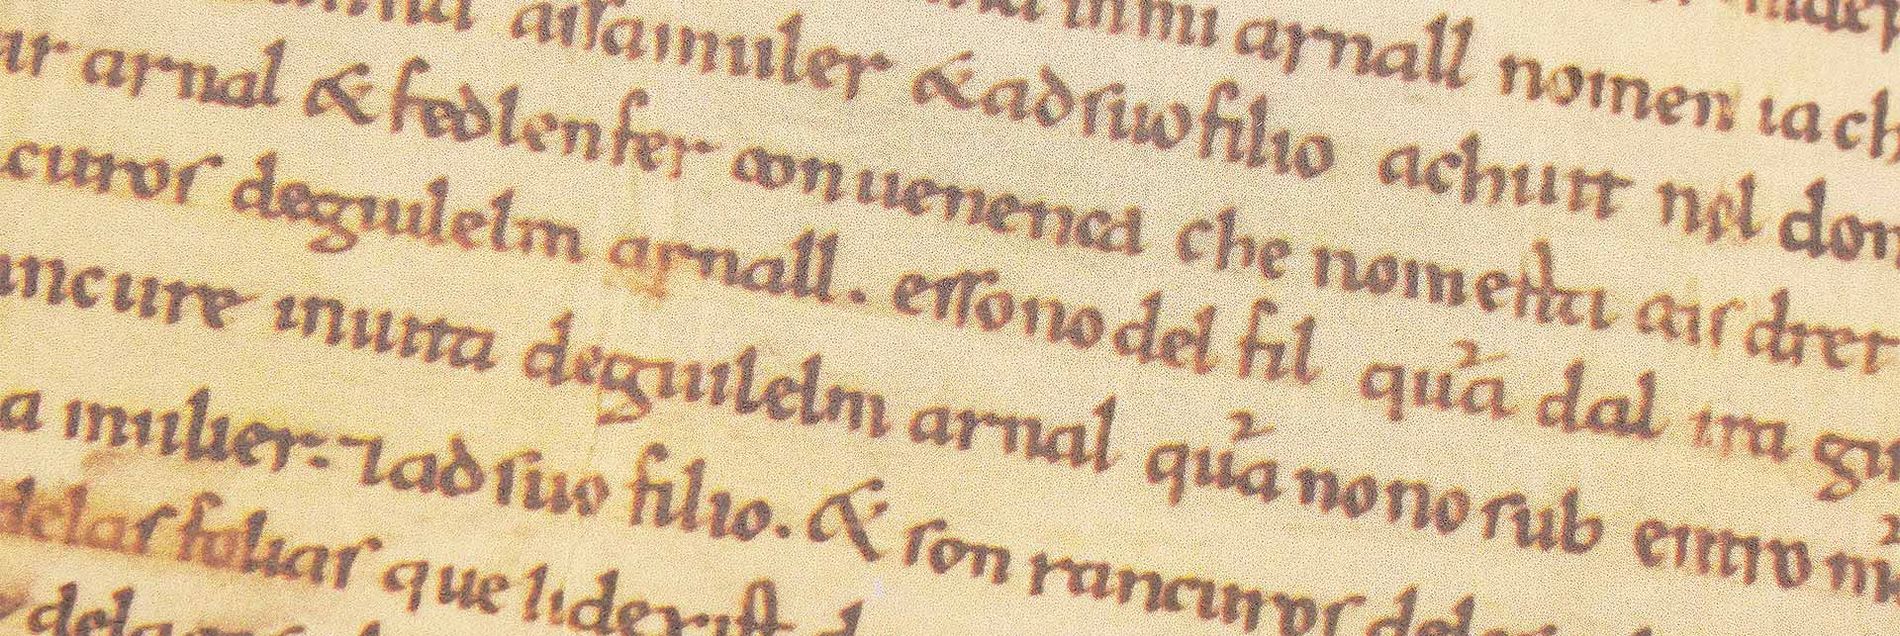 <i>“Der älteste bekannte, nicht-literarische Text in katalanischer Sprache”</i>